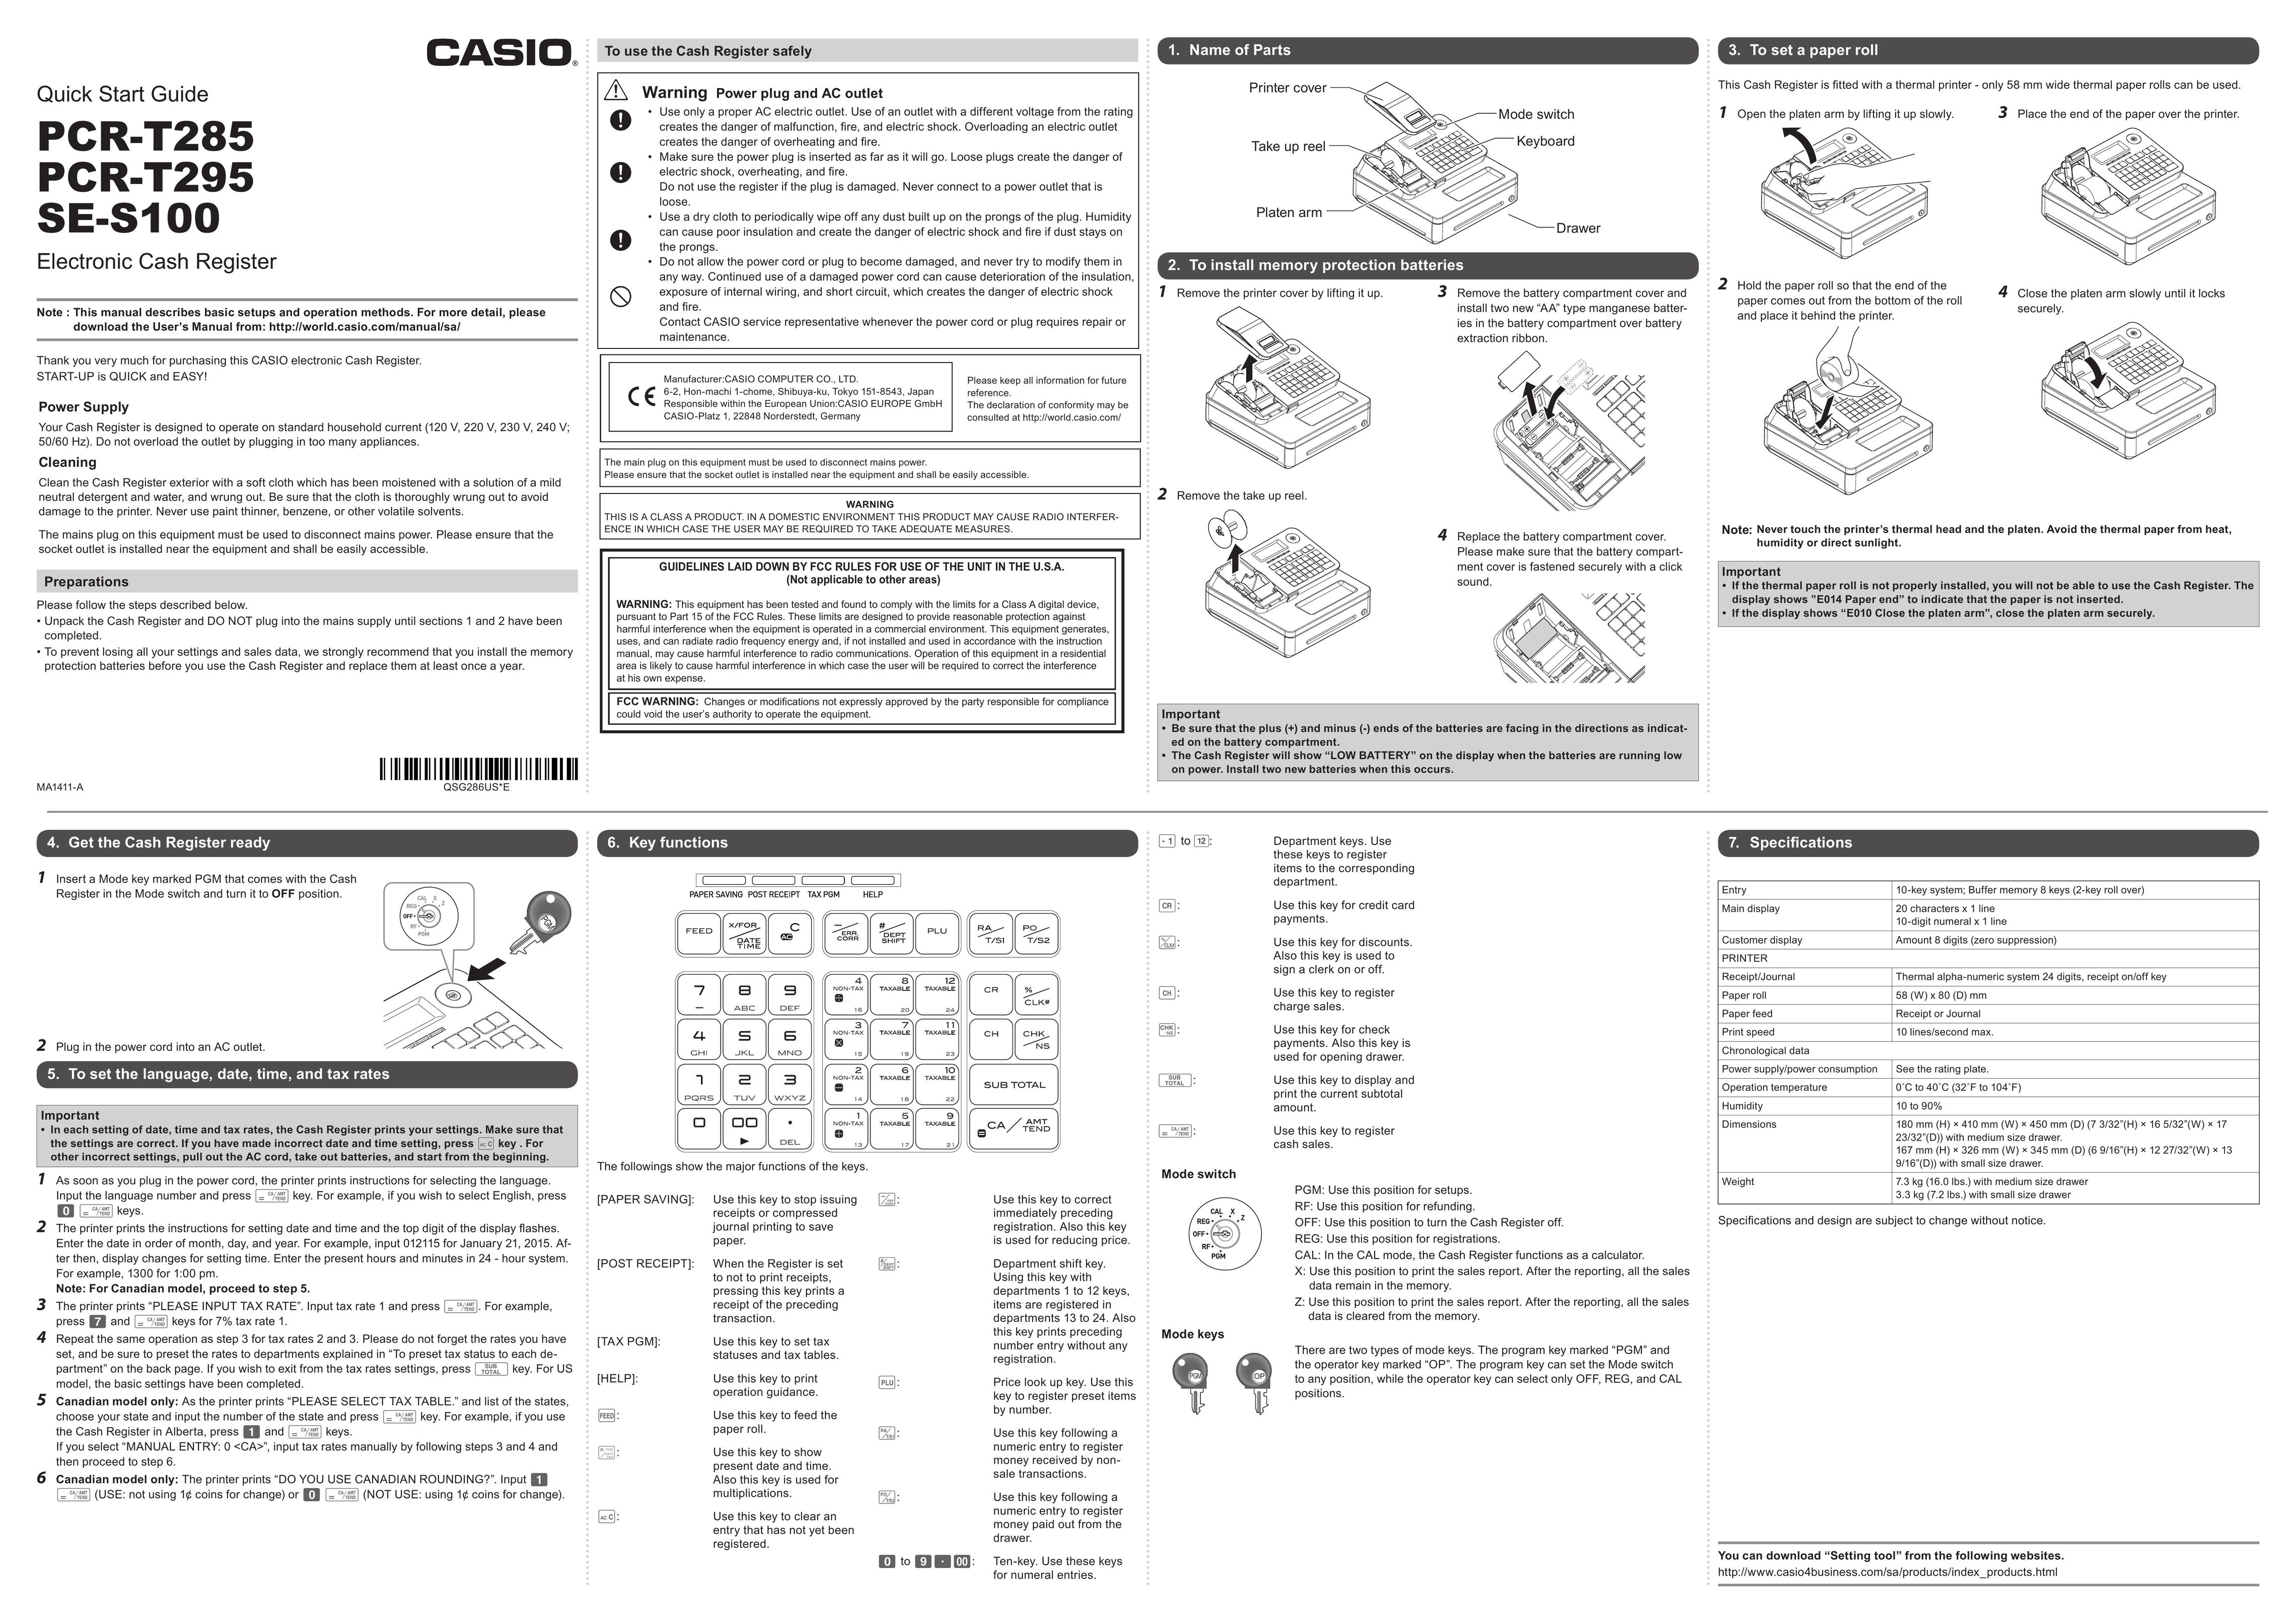 Casio PCR-T285 Cash Register User Manual